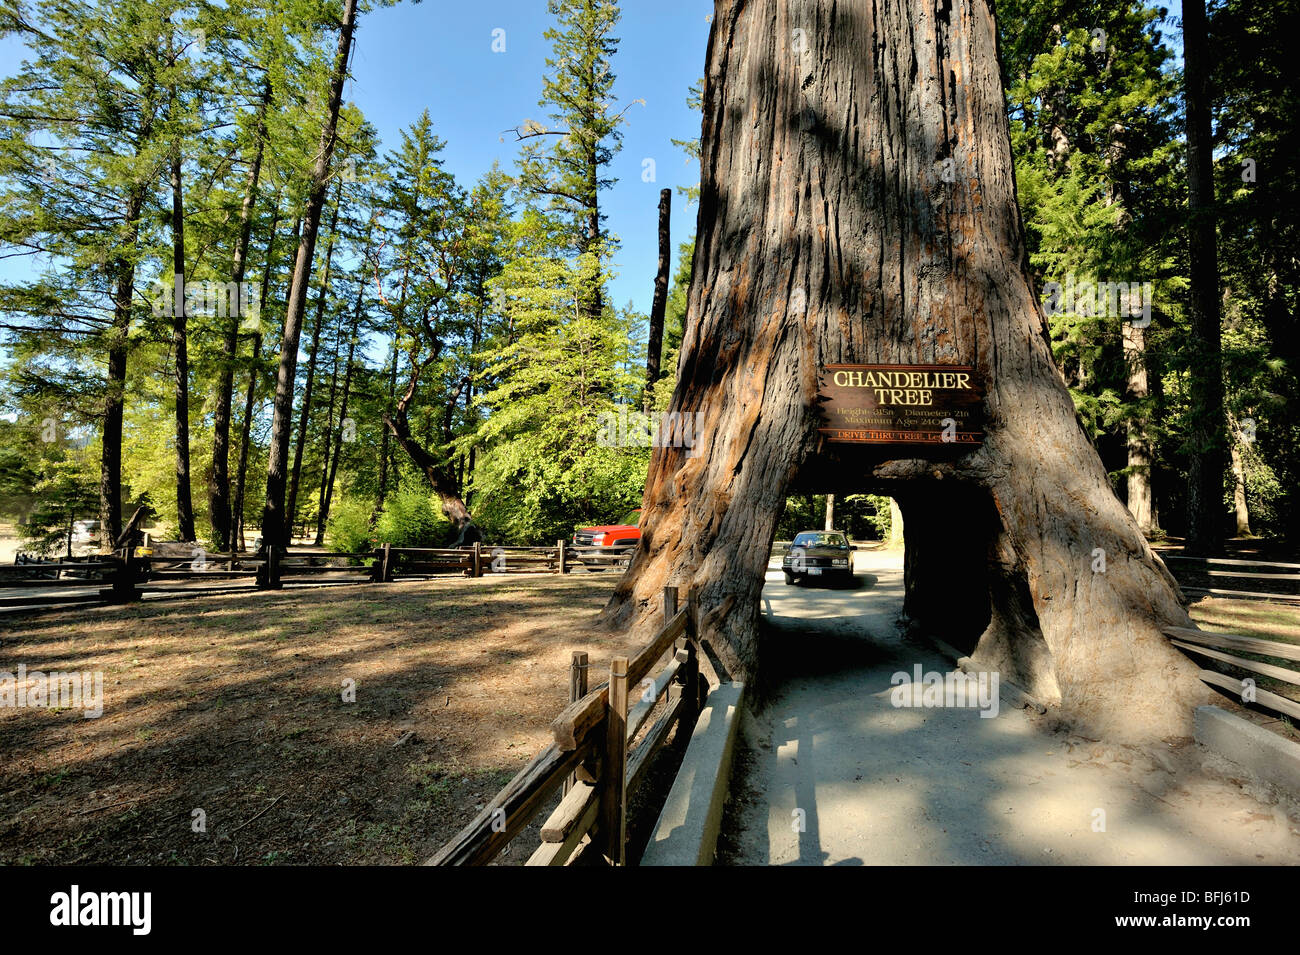 Kronleuchter-Baum in den coastal Redwood-Wäldern von Nord-Kalifornien, USA  Stockfotografie - Alamy